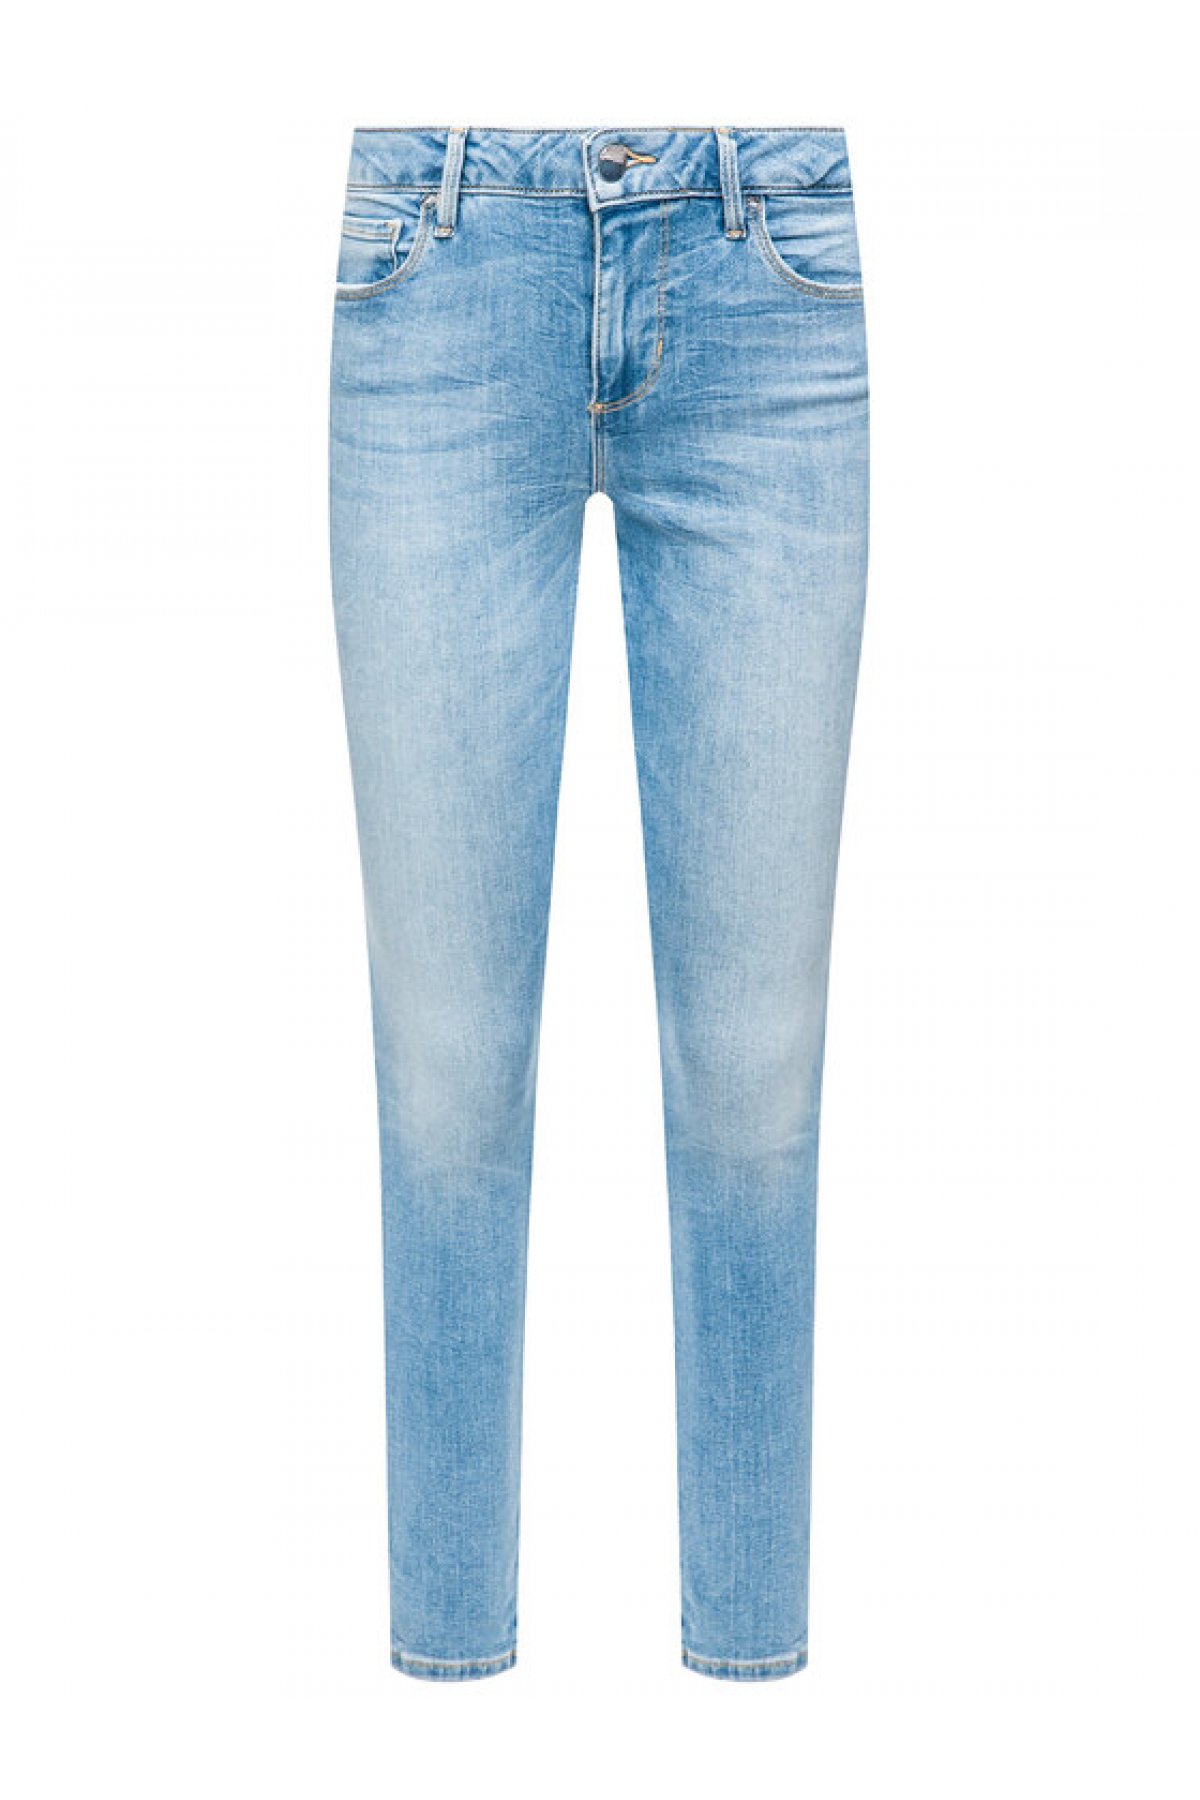 Guess jeans W01A99 D38R4